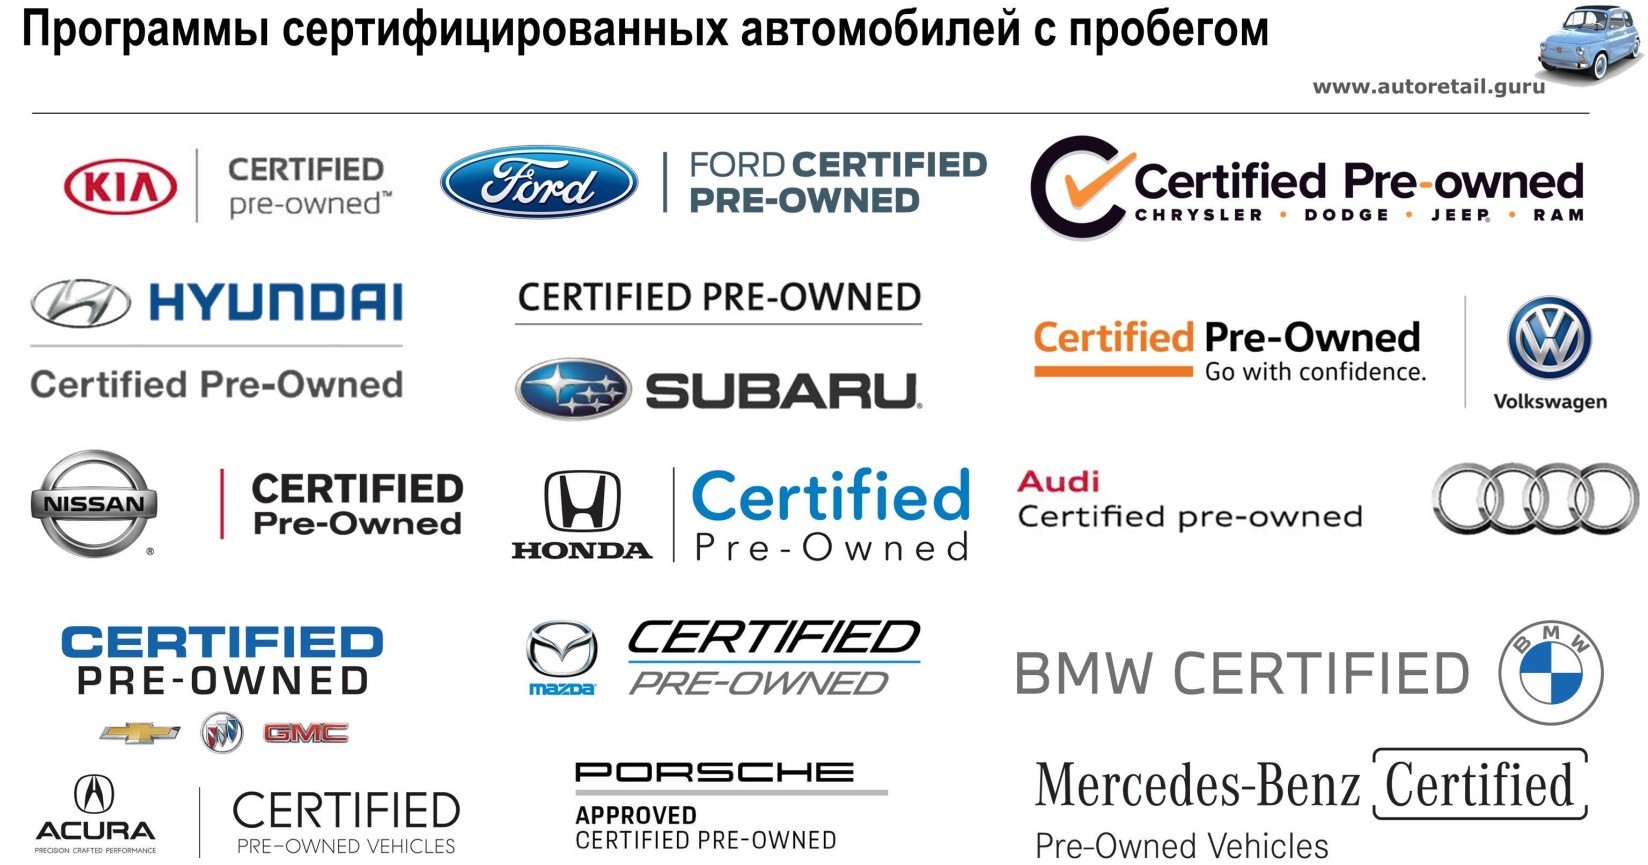 Honda zertifizéiert Occasiounsautoen (CPO) Programm